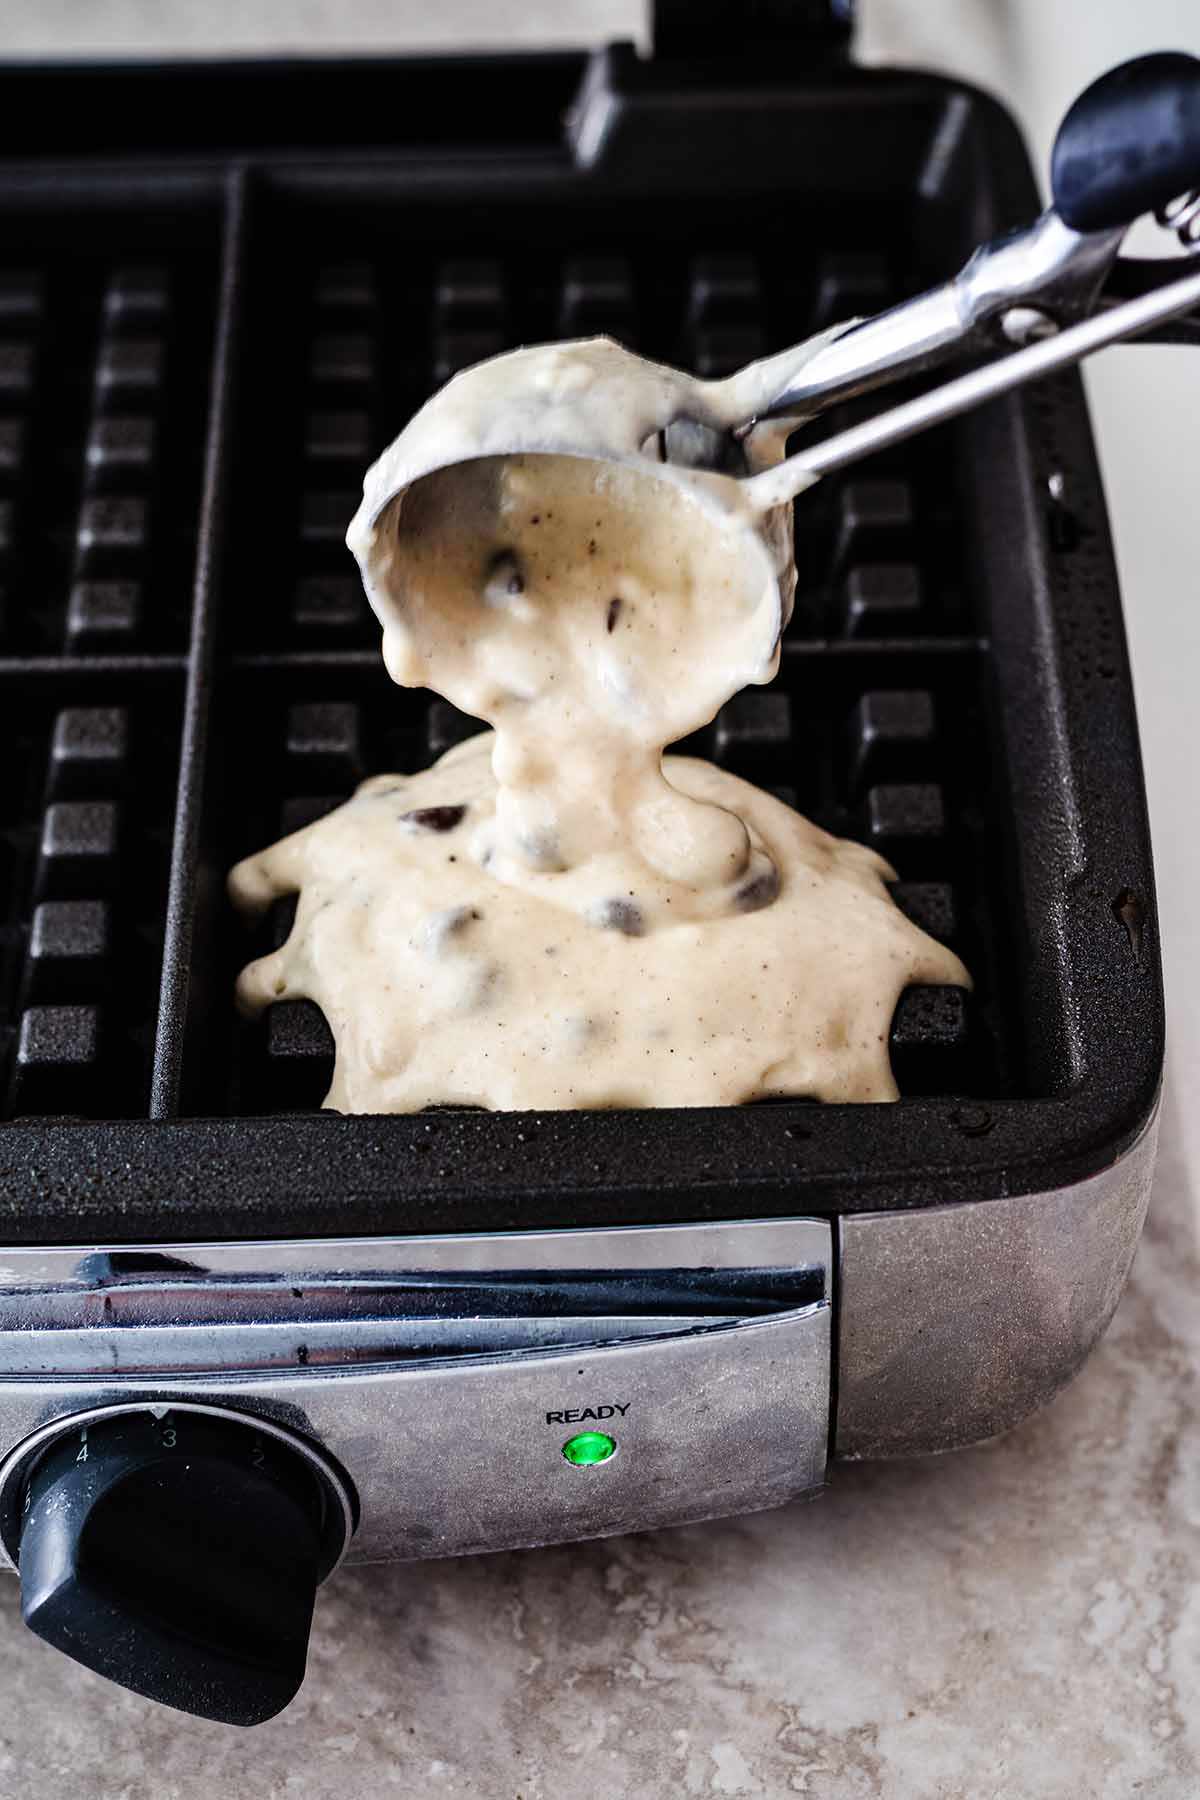 Waffle batter being scooped onto waffle iron.